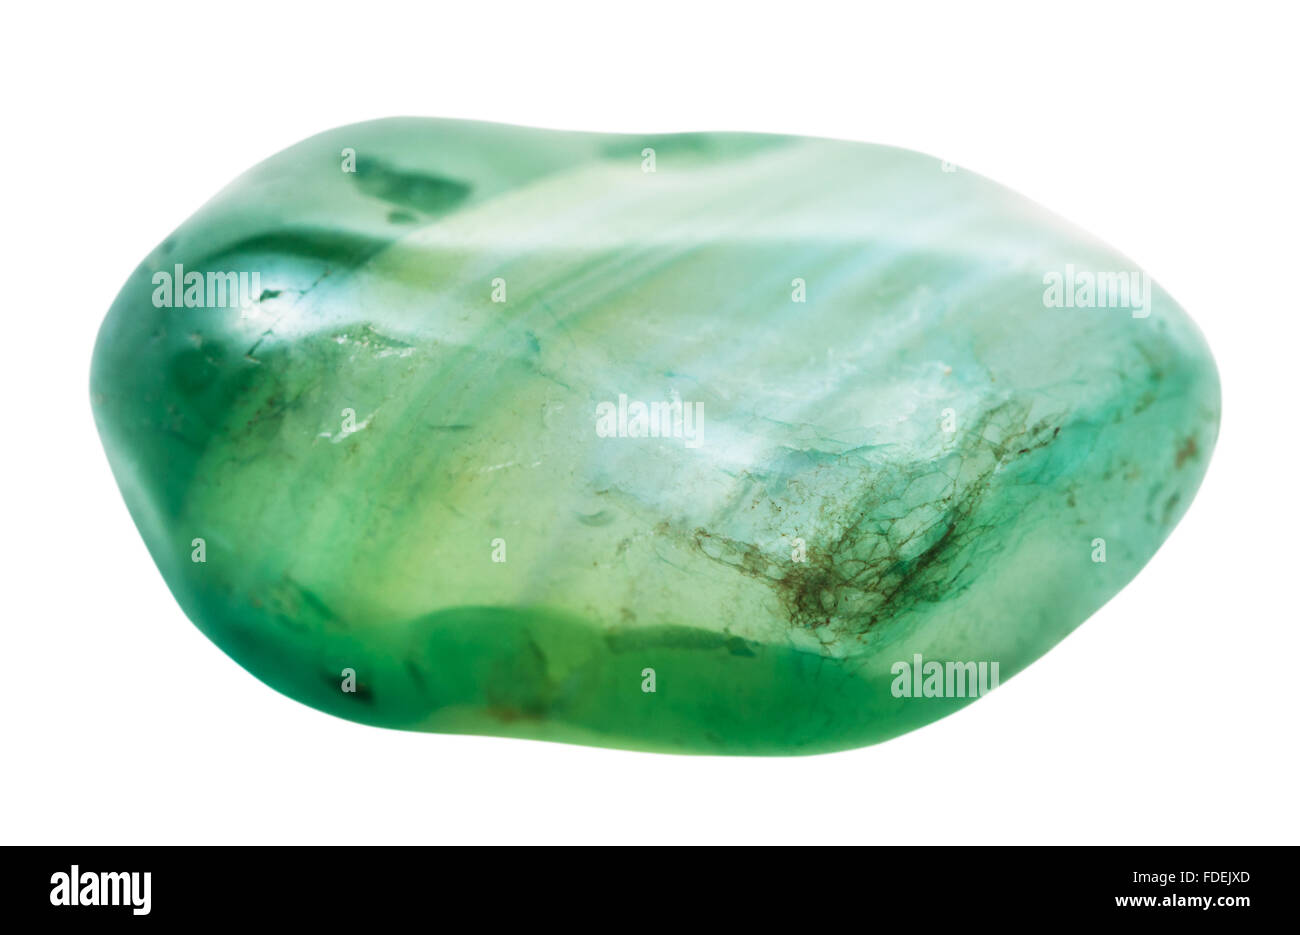 natürliche mineralische Edelstein - Trommelsteine grün getönten Achat Edelstein isoliert auf weißem Hintergrund hautnah Stockfoto